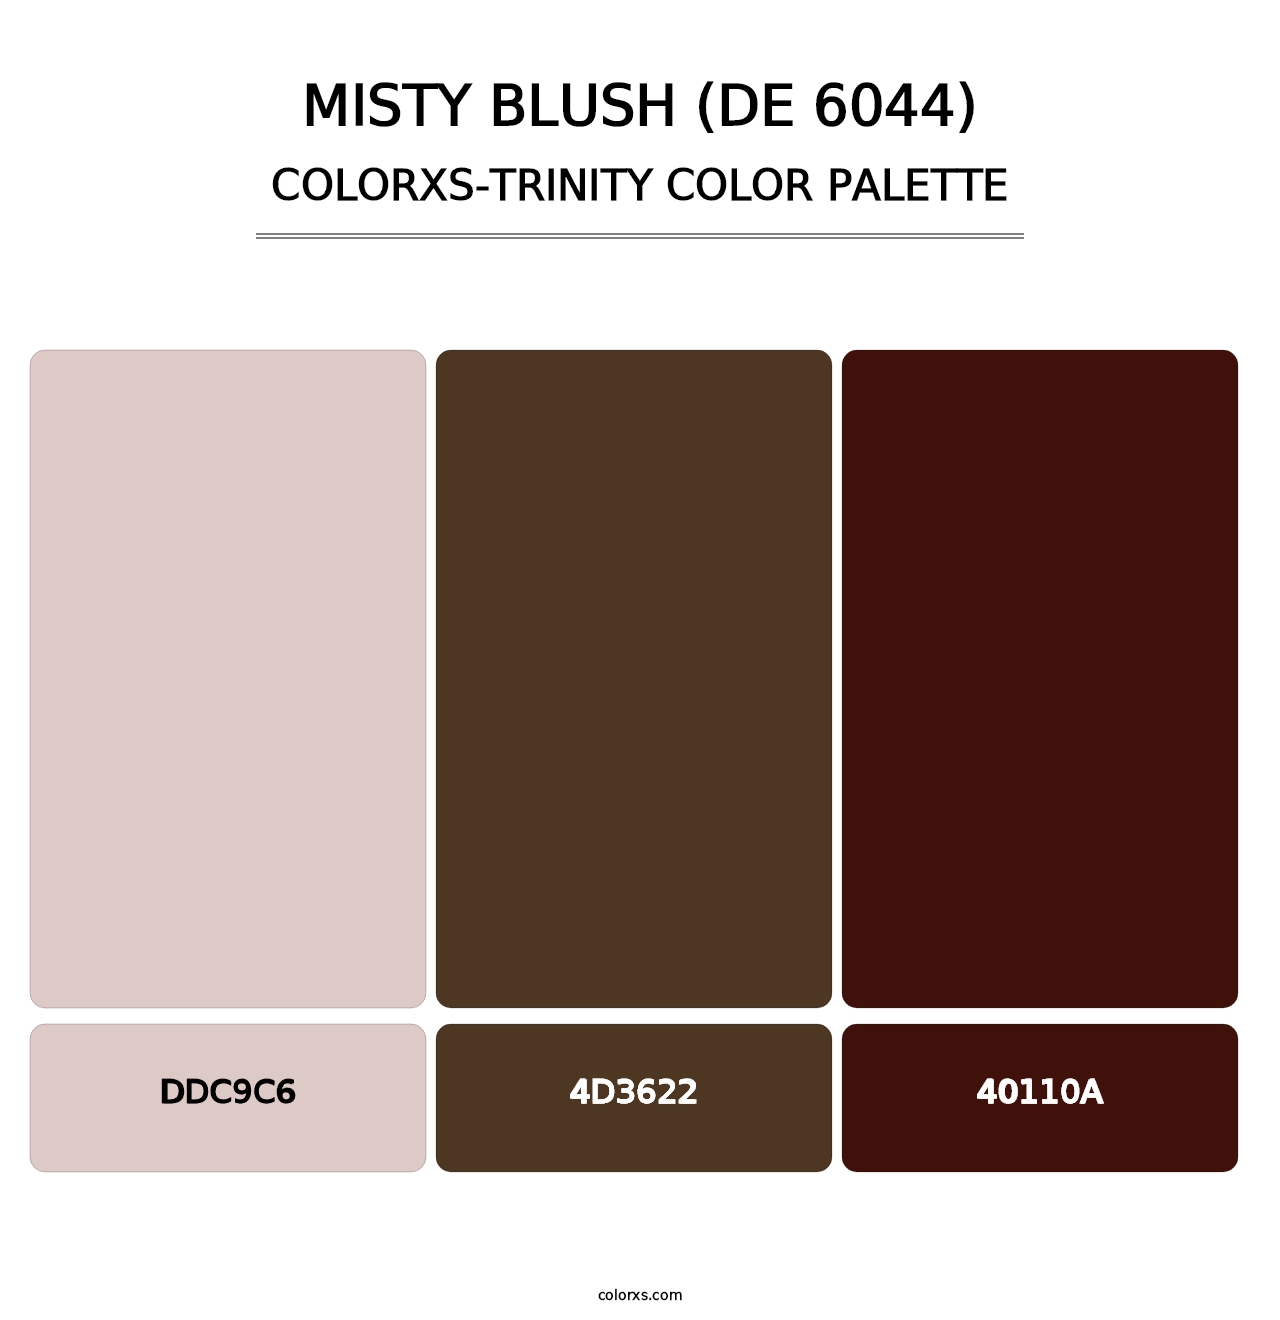 Misty Blush (DE 6044) - Colorxs Trinity Palette